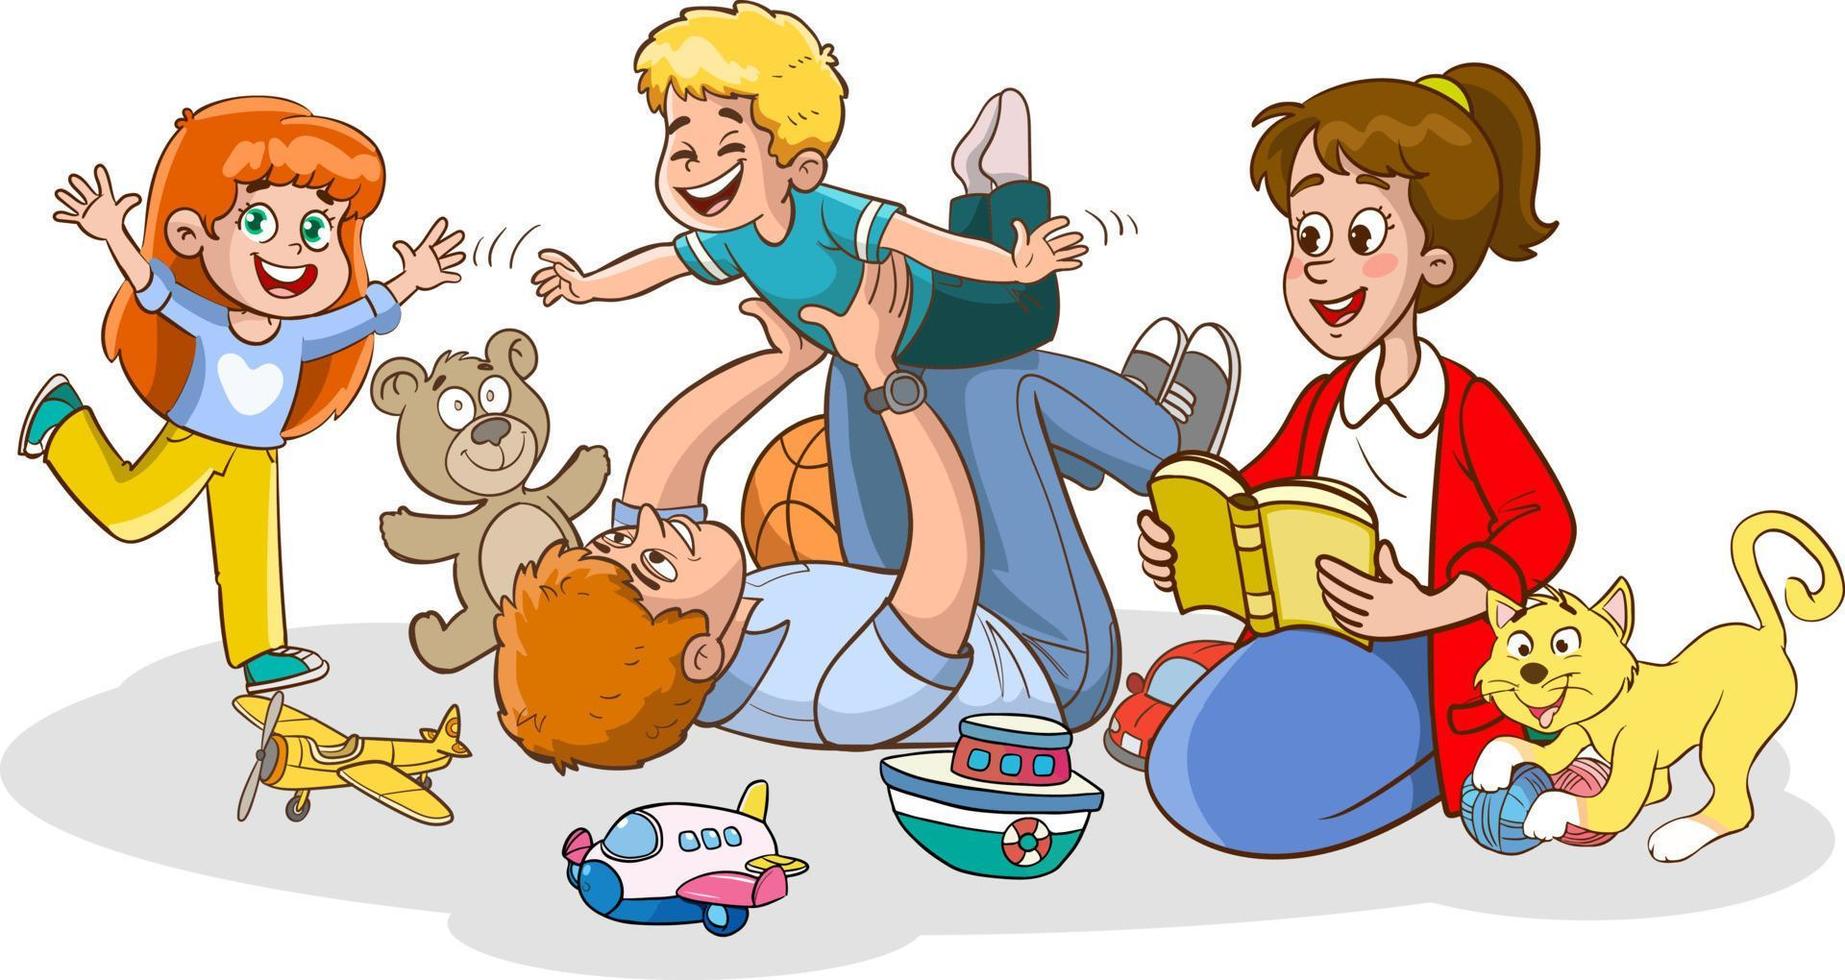 giovane padre e bambini avendo divertimento e giocando Giochi insieme.famiglia avendo divertimento vettore illustrazione.